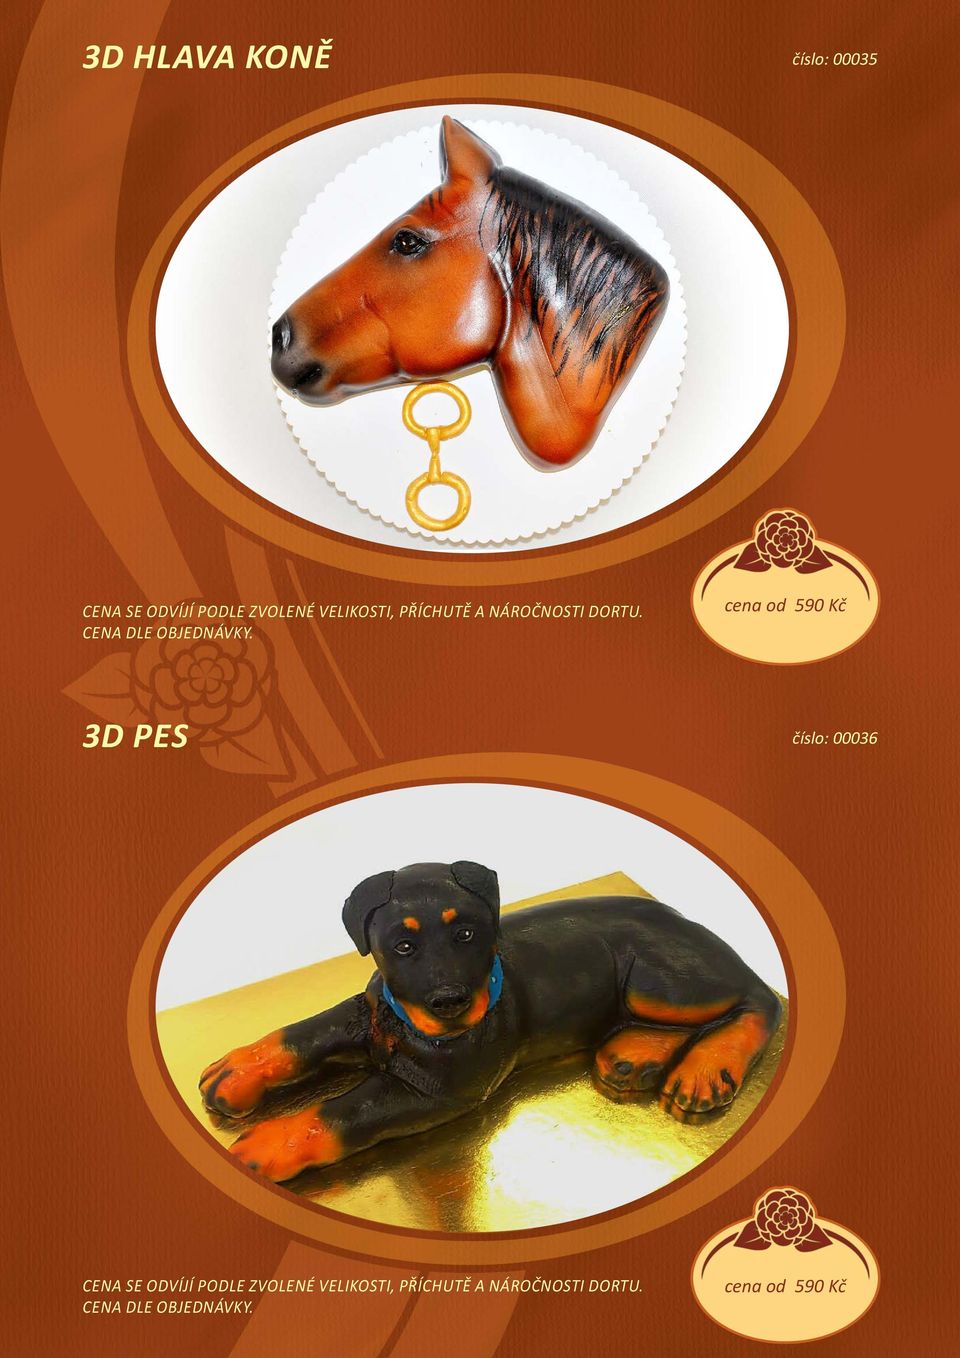 cena od 590 Kč 3D pes číslo: 00036 Cena se odvíjí podle zvolené